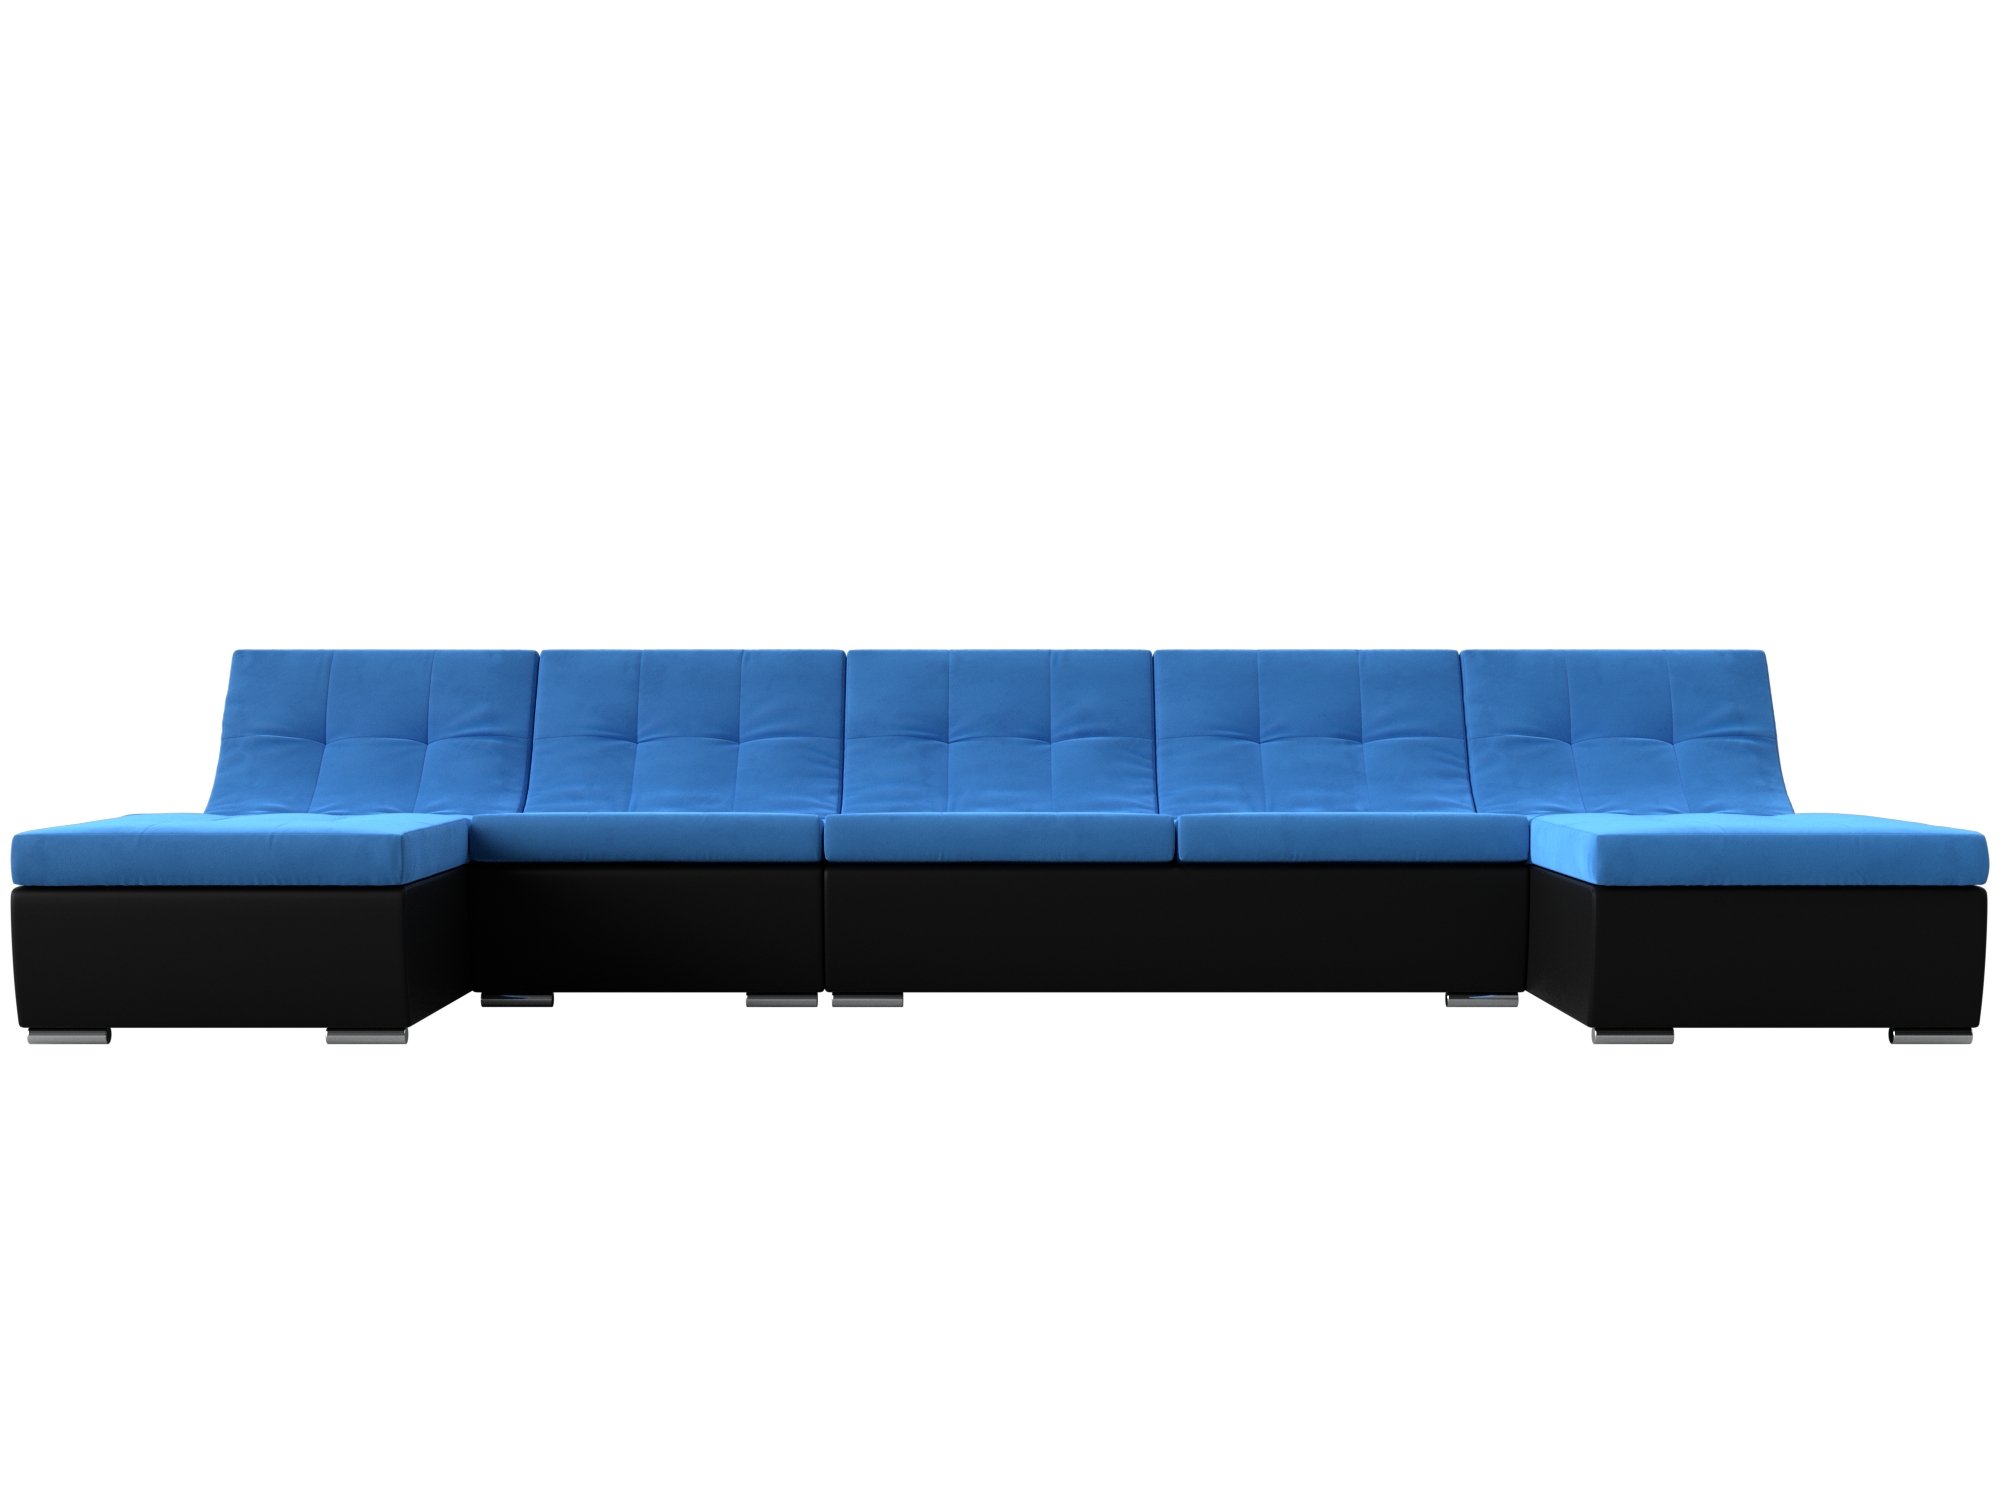 П-образный модульный диван Монреаль Long MebelVia Голубой, Черный, Велюр, Экокожа, ЛДСП п образный модульный диван монреаль long mebelvia серый черный велюр экокожа лдсп